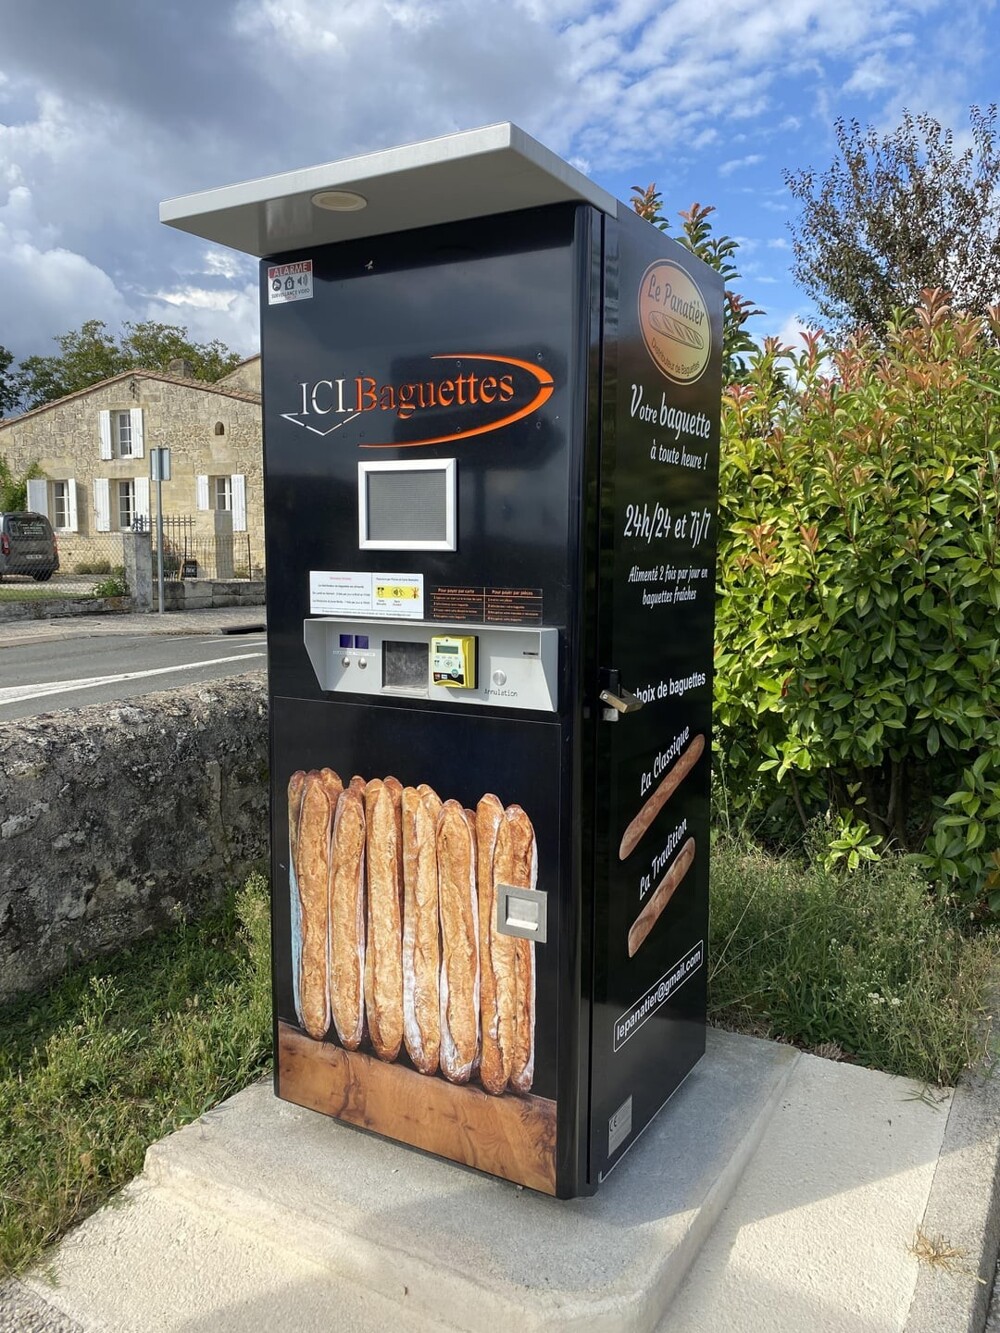 3. Во Франции есть автоматы по продаже багетов